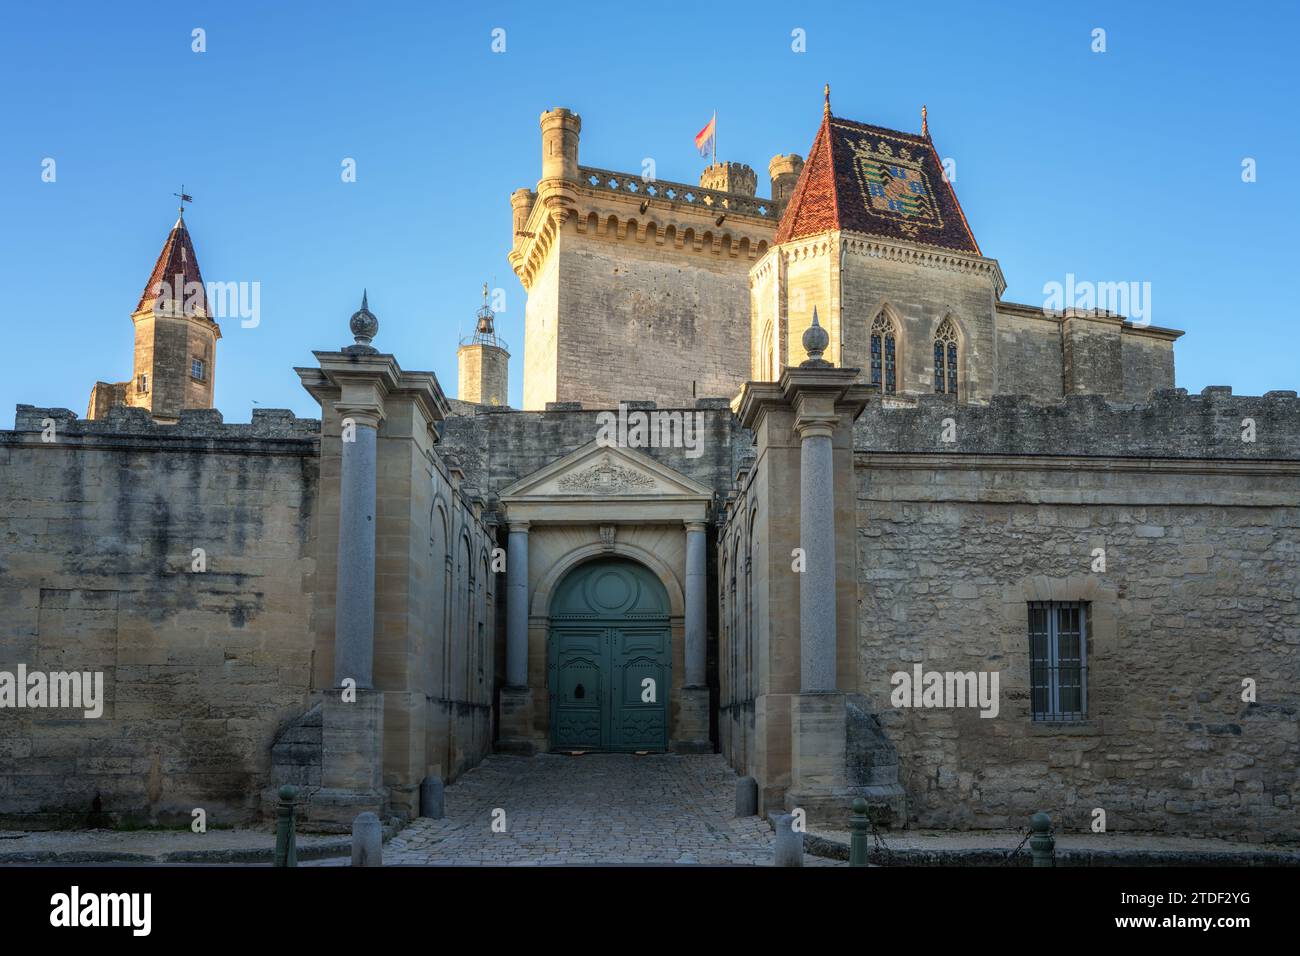 Château d'Uzès, Uzès, Gard, Provence, France, Europe Banque D'Images